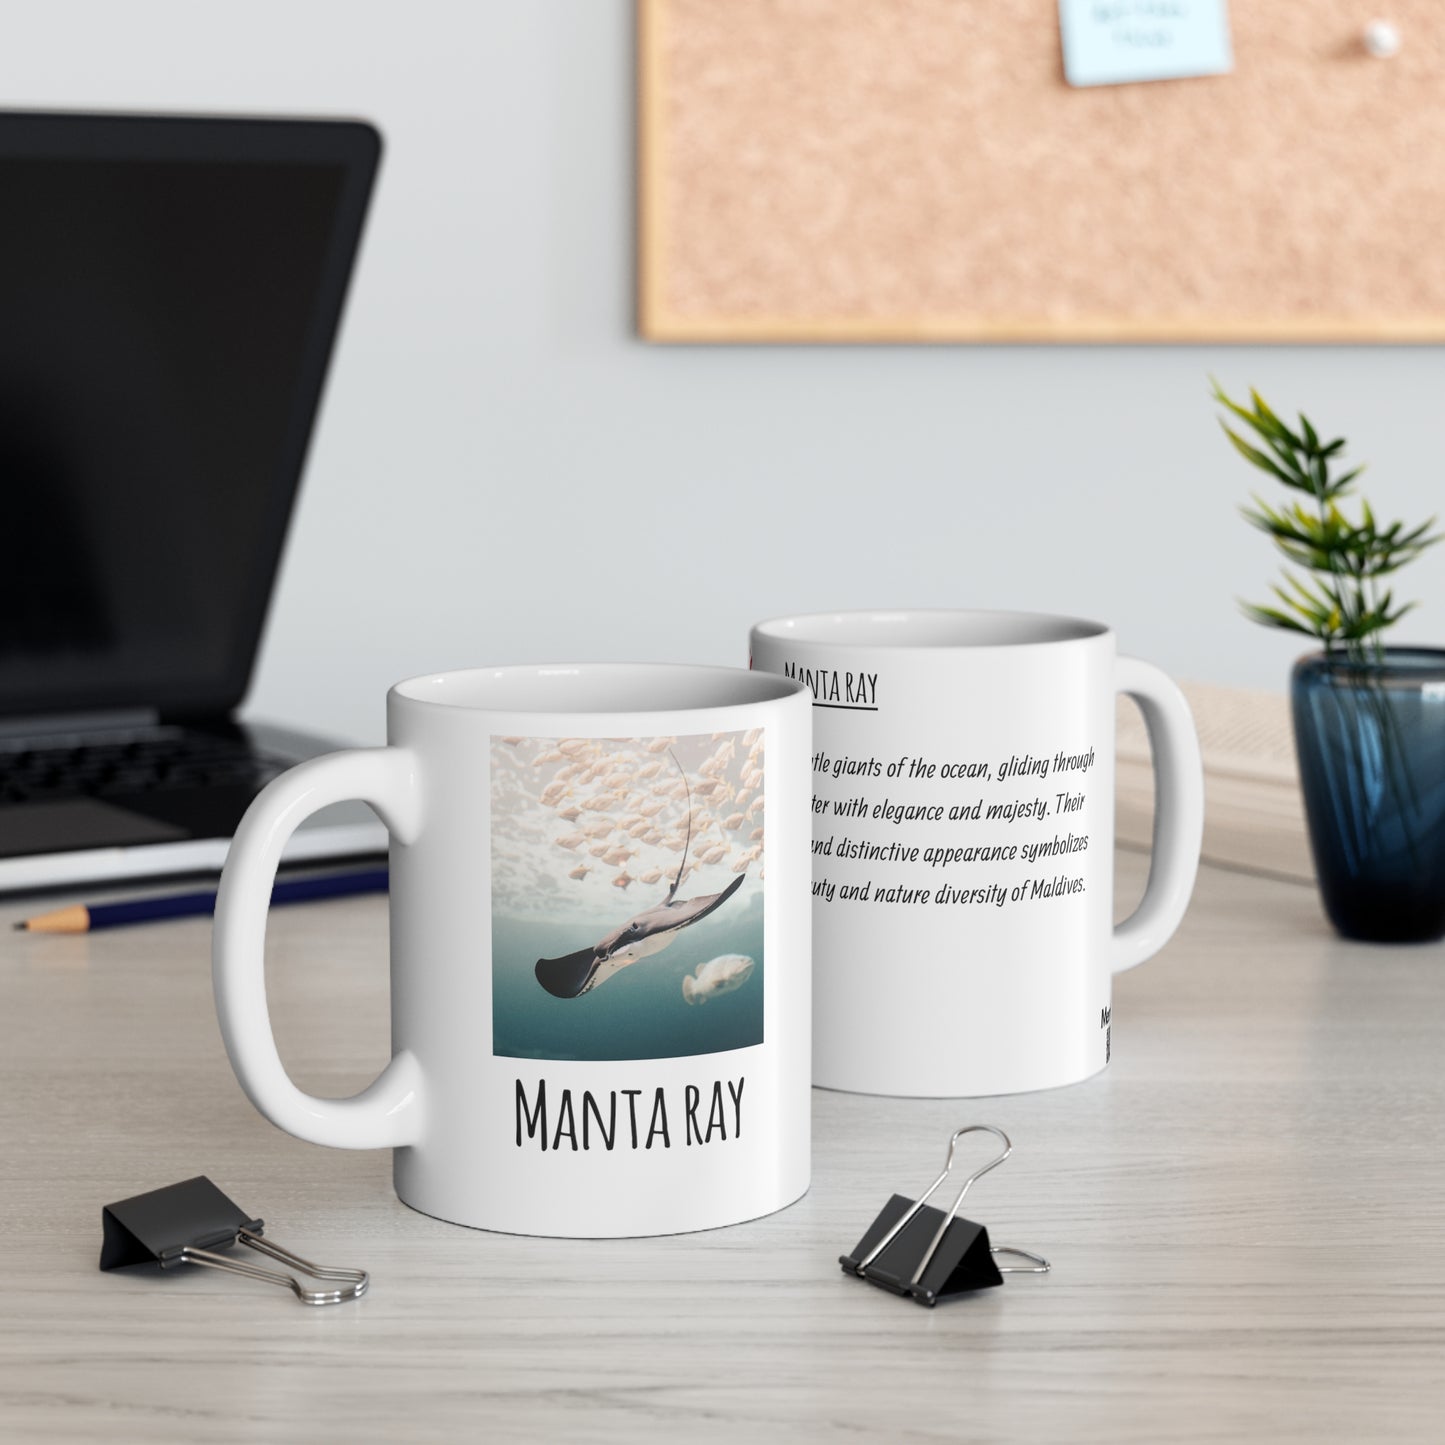 Manta ray 3 - Ceramic Mug 11oz